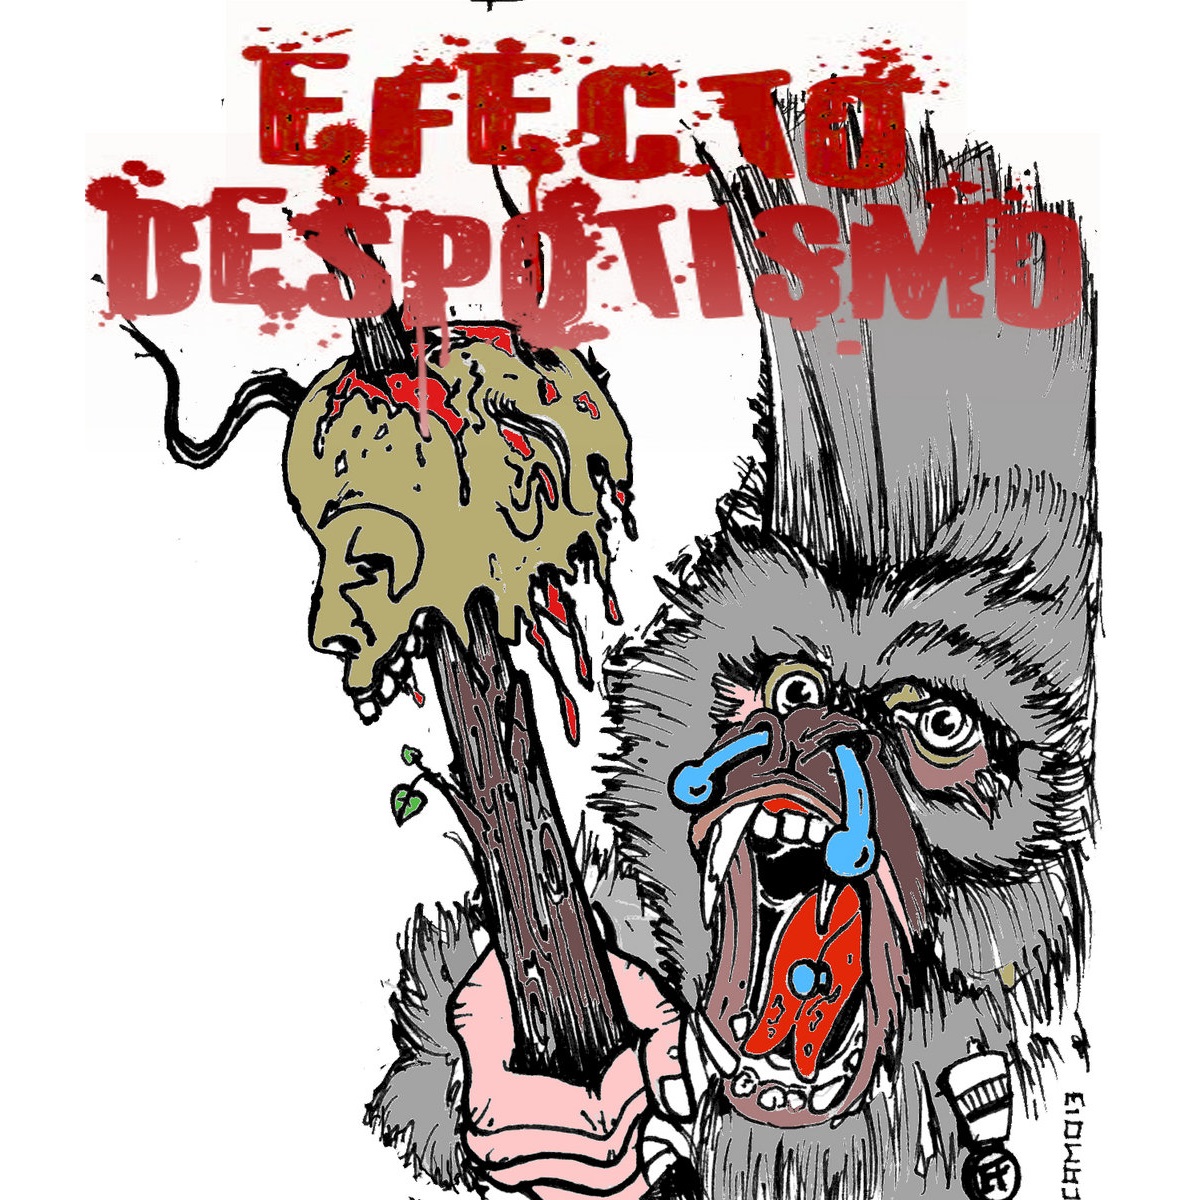 EFECTO DESPOTISMO - Demo 2012 cover 